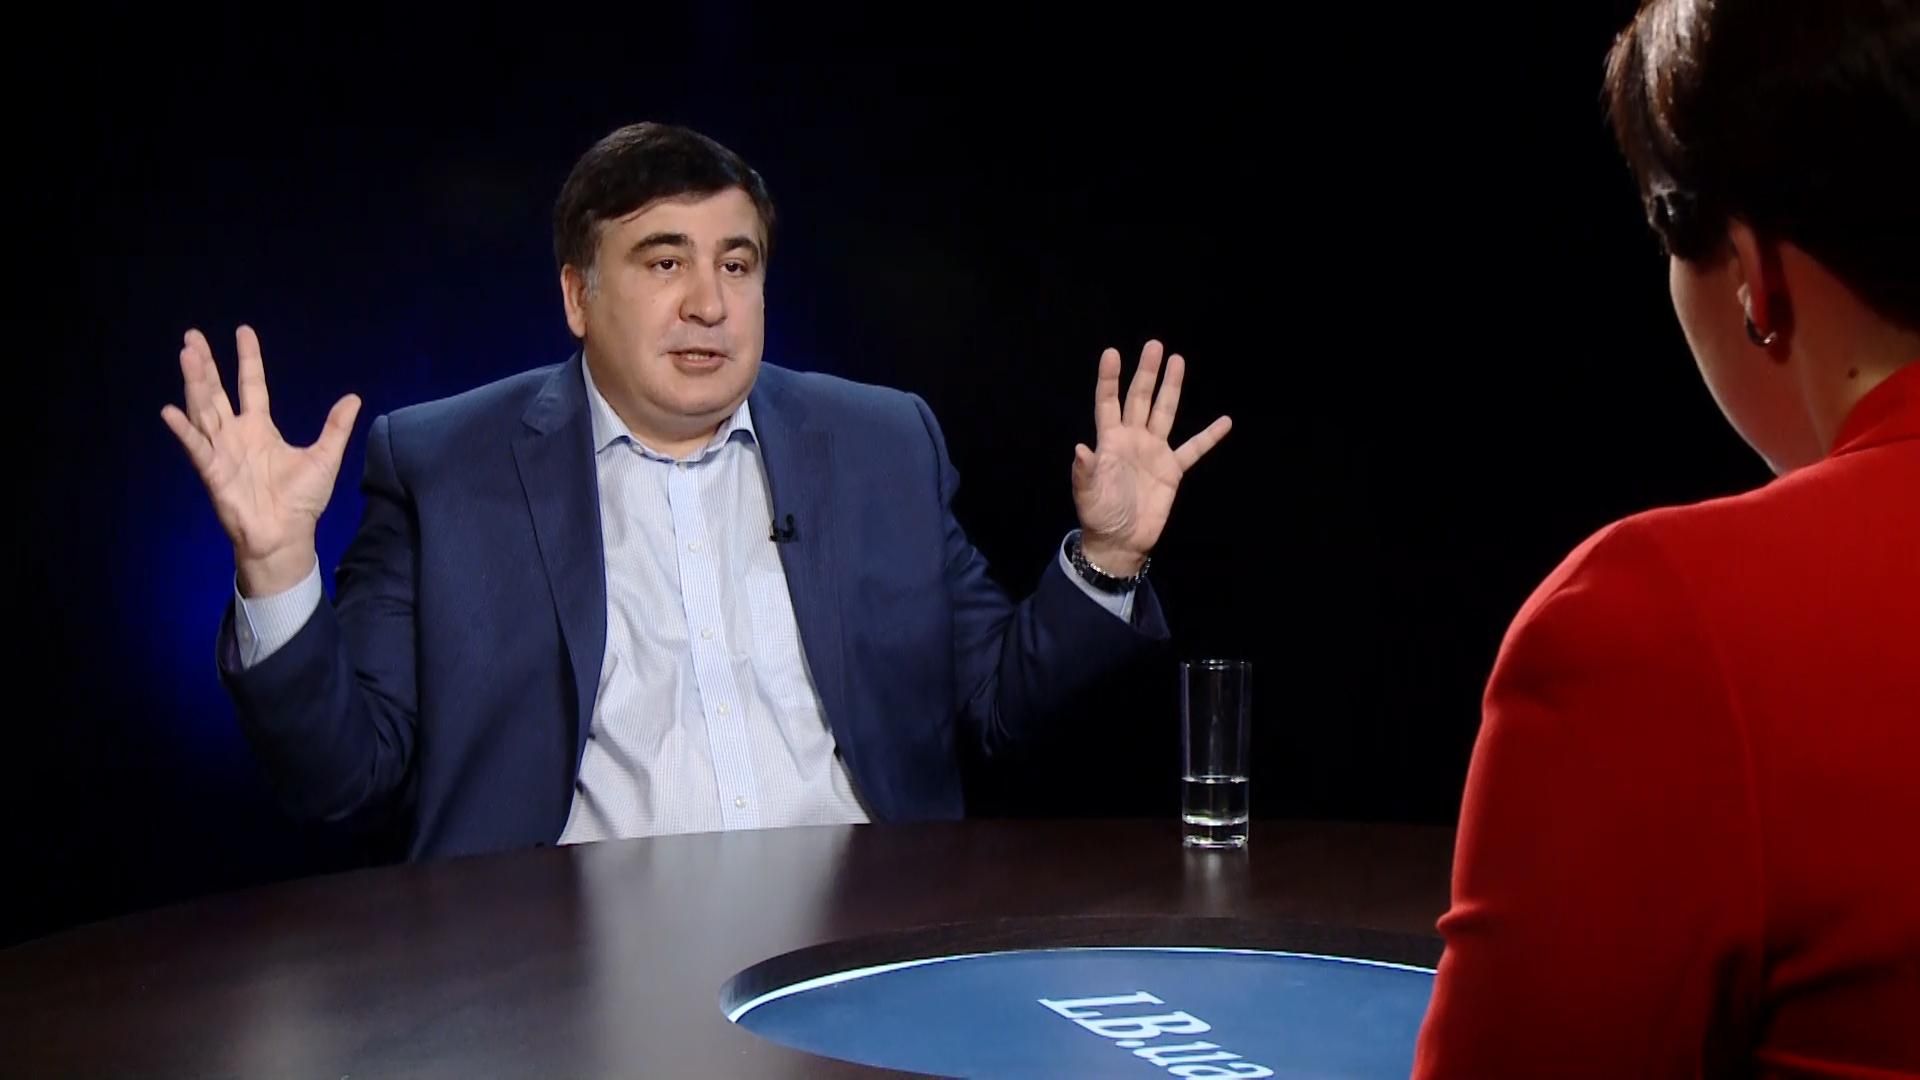 Журналистка в эфире ток-шоу устроила словесную перепалку с Саакашвили: появилось видео